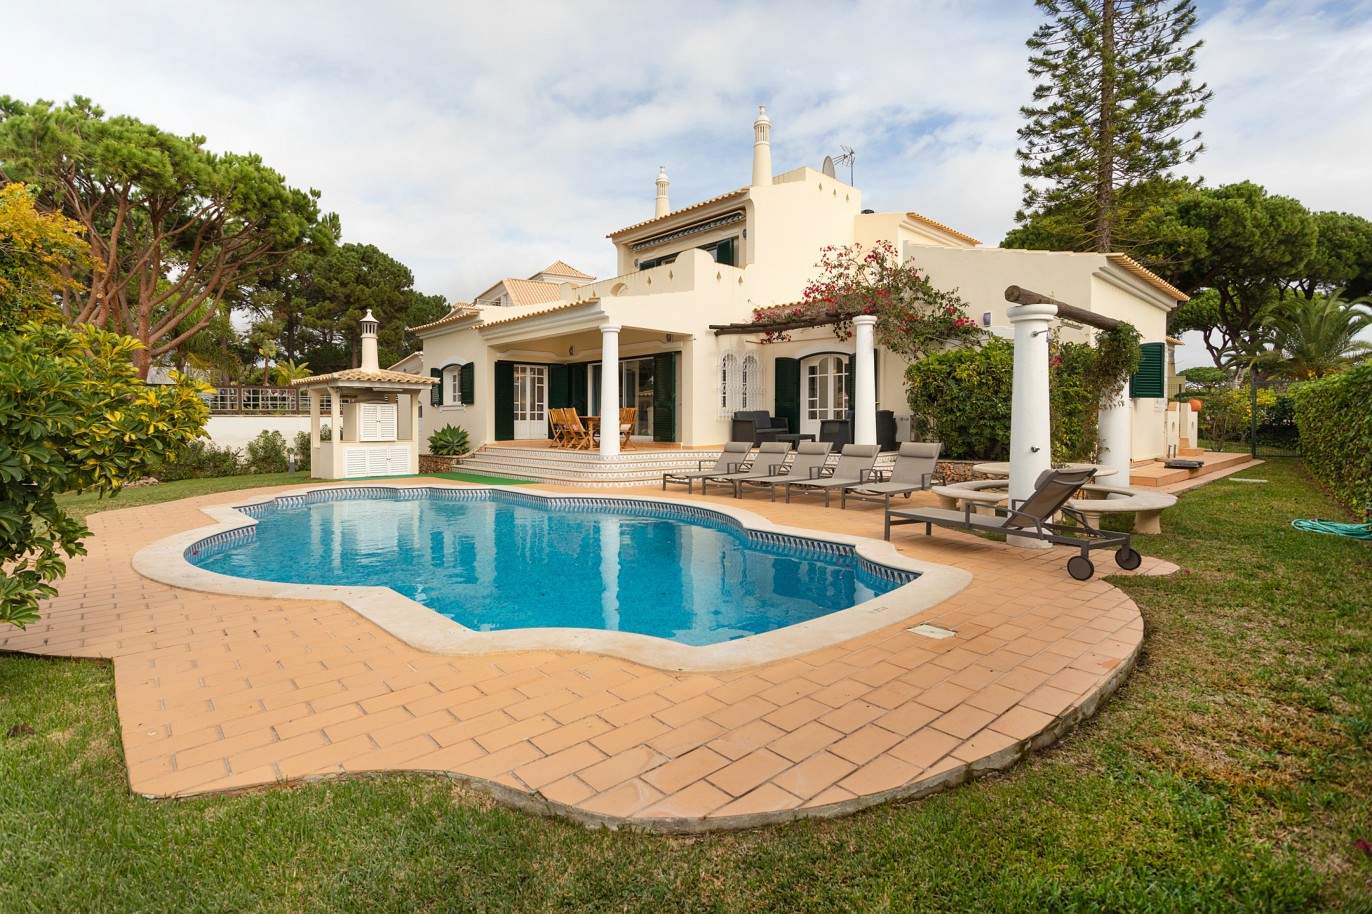 5 Bedroom Villa with swimming pool, for sale in Vilamoura, Algarve_212567